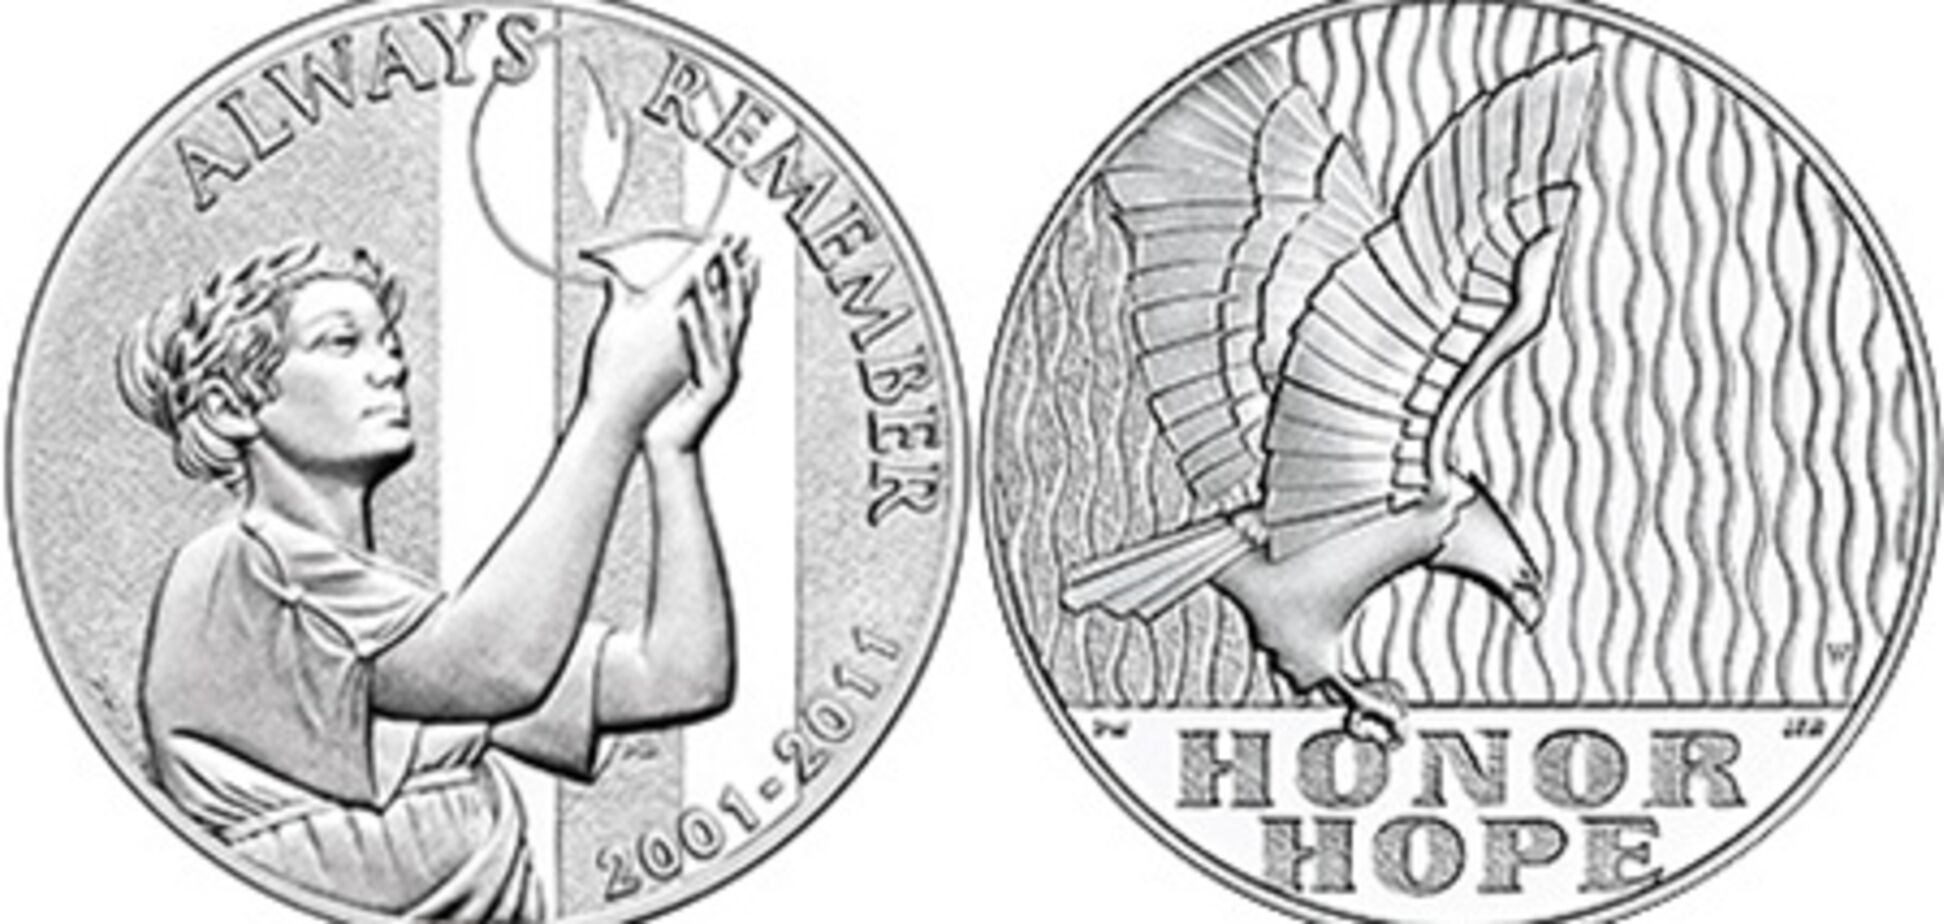 Монетный двор США показал медаль к десятилетию терактов 11 сентября